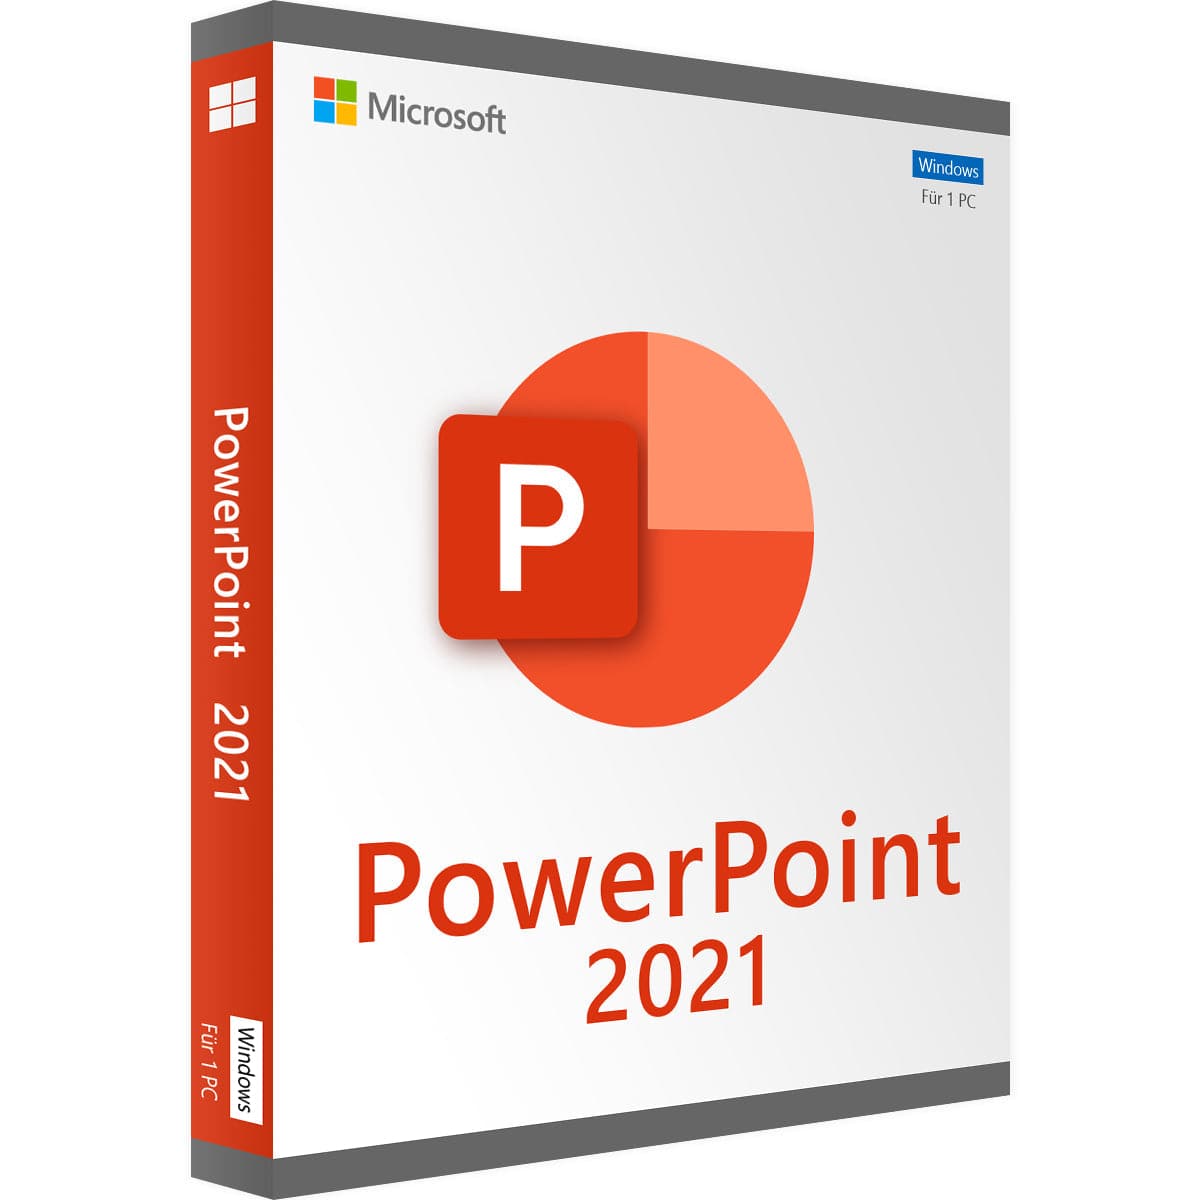    Microsoft PowerPoint 2021 Kaufen